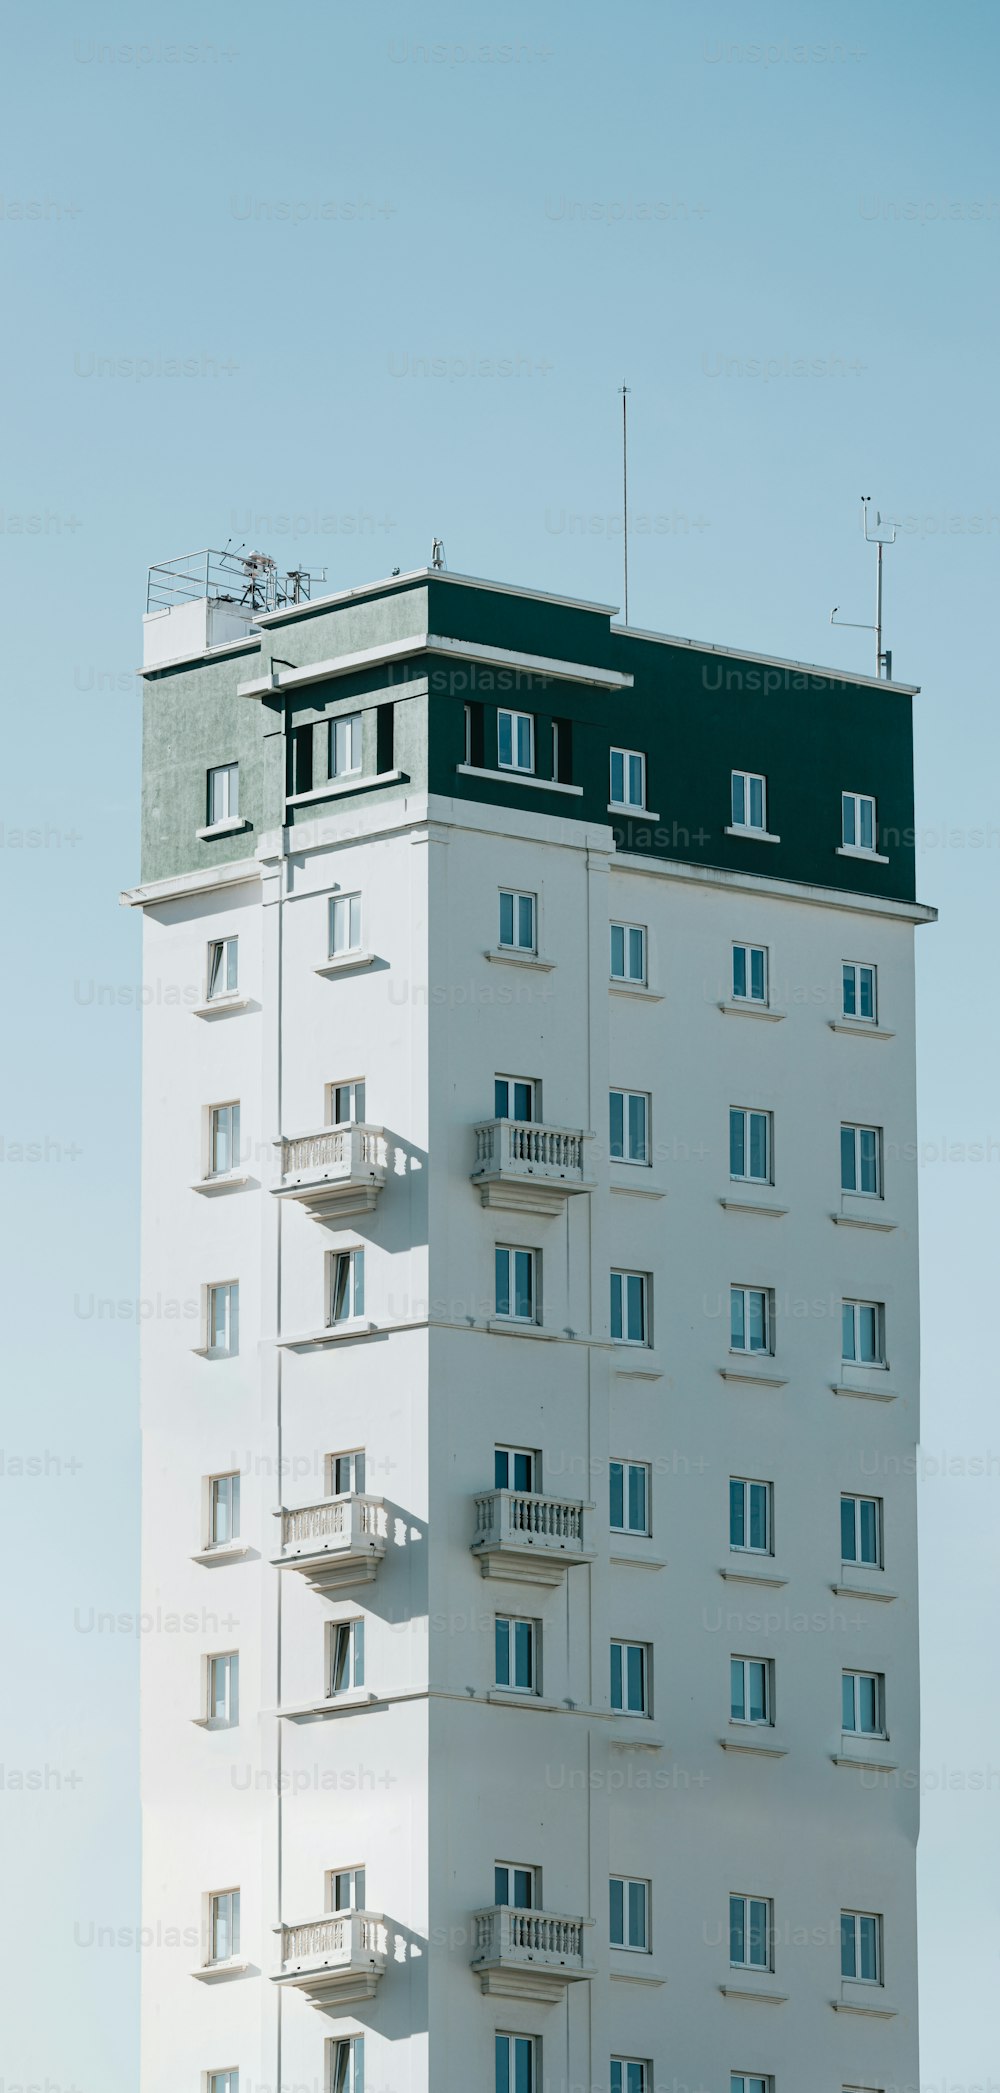 Un edificio alto y blanco con balcones en la parte superior